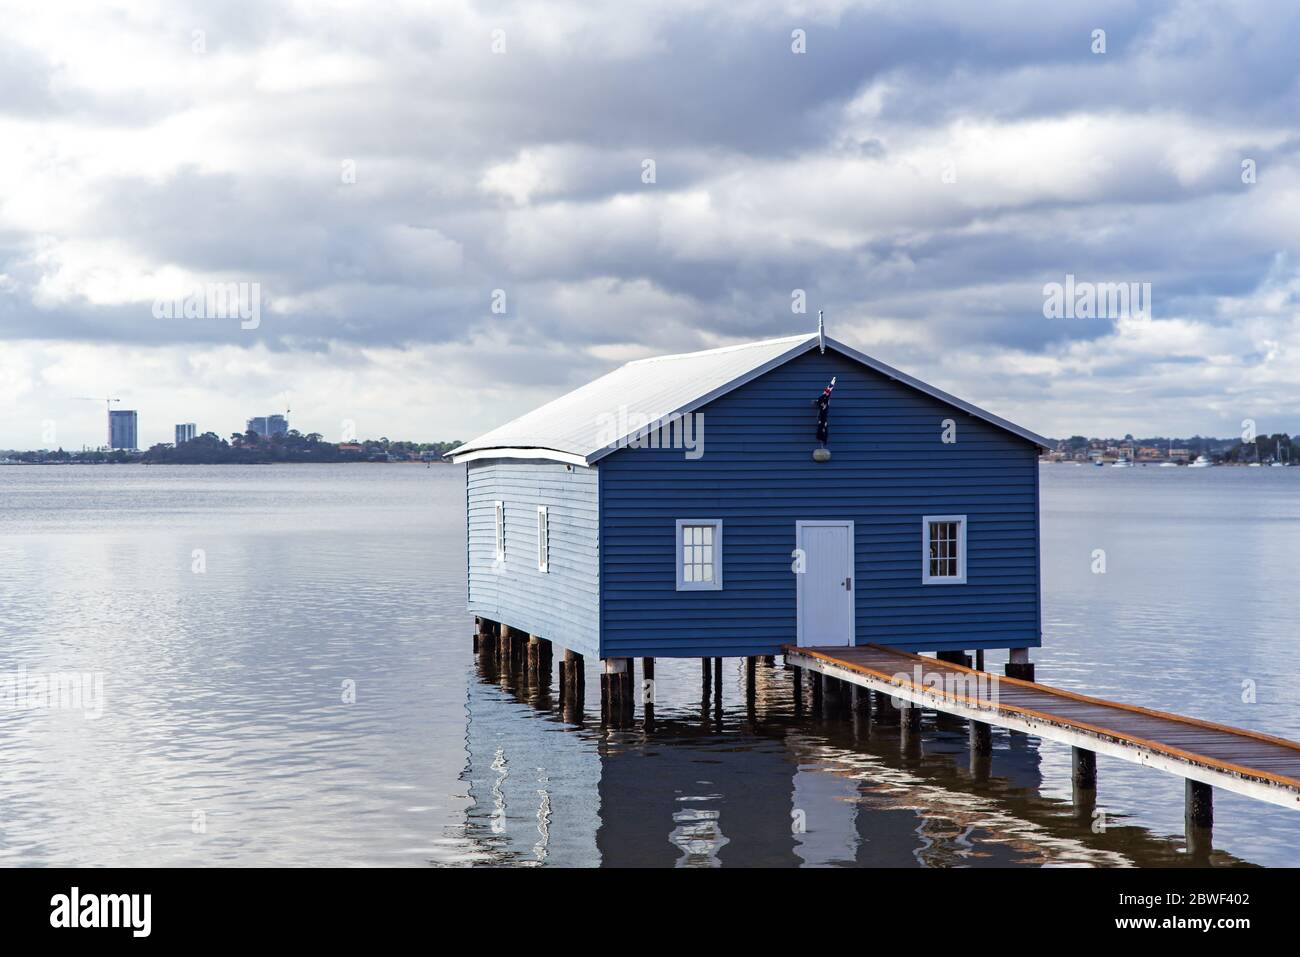 Perth, novembre 2019 : célèbre petite maison de bateau bleu - le hangar de Crawley Edge situé sur la Swan River à Crawley à Perth. Tourisme en Australie occidentale Banque D'Images